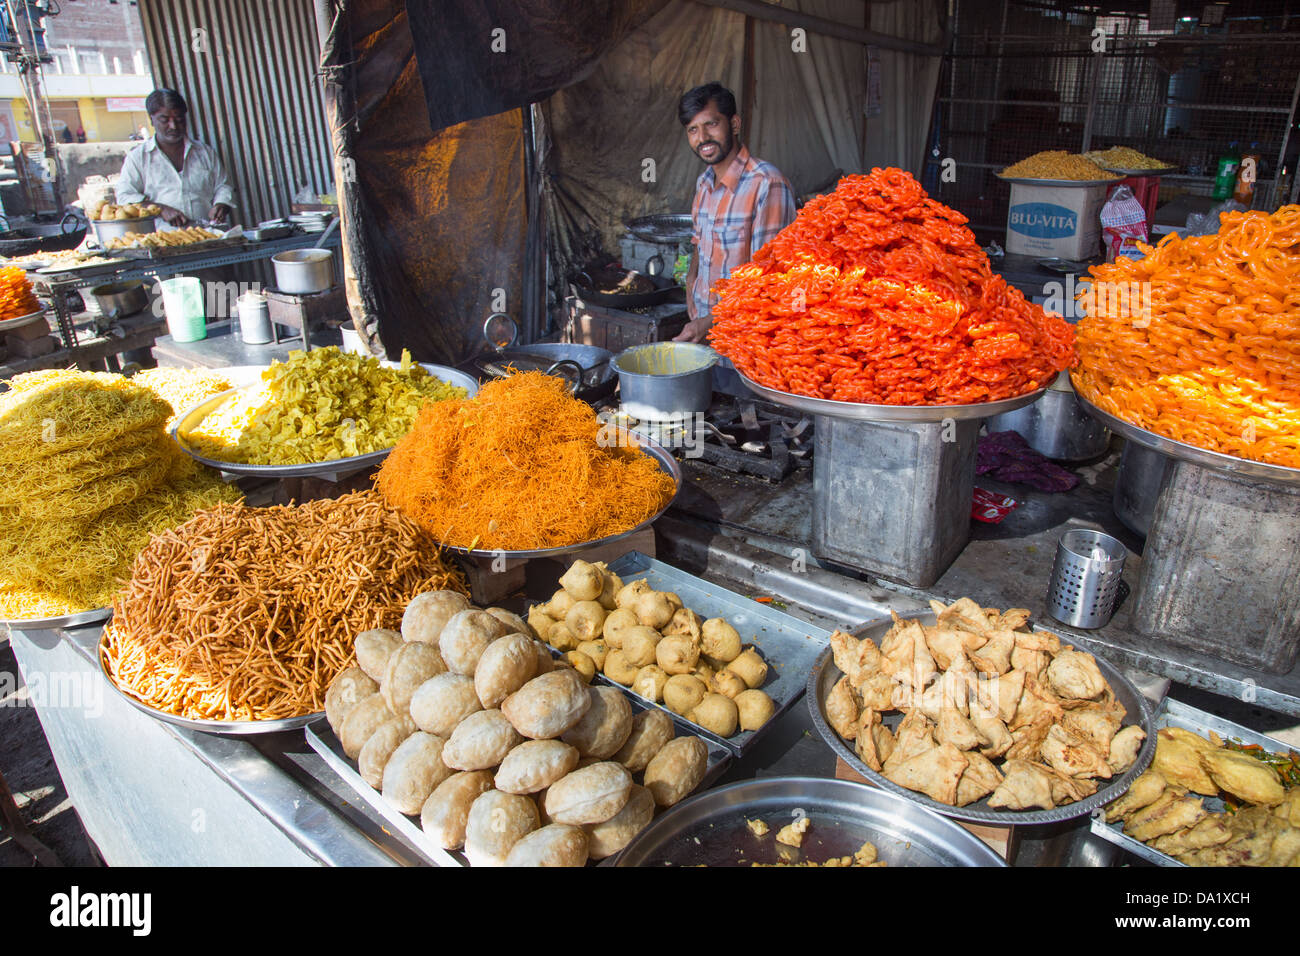 Les grignotines et sucreries, Aurangabad, Inde Banque D'Images